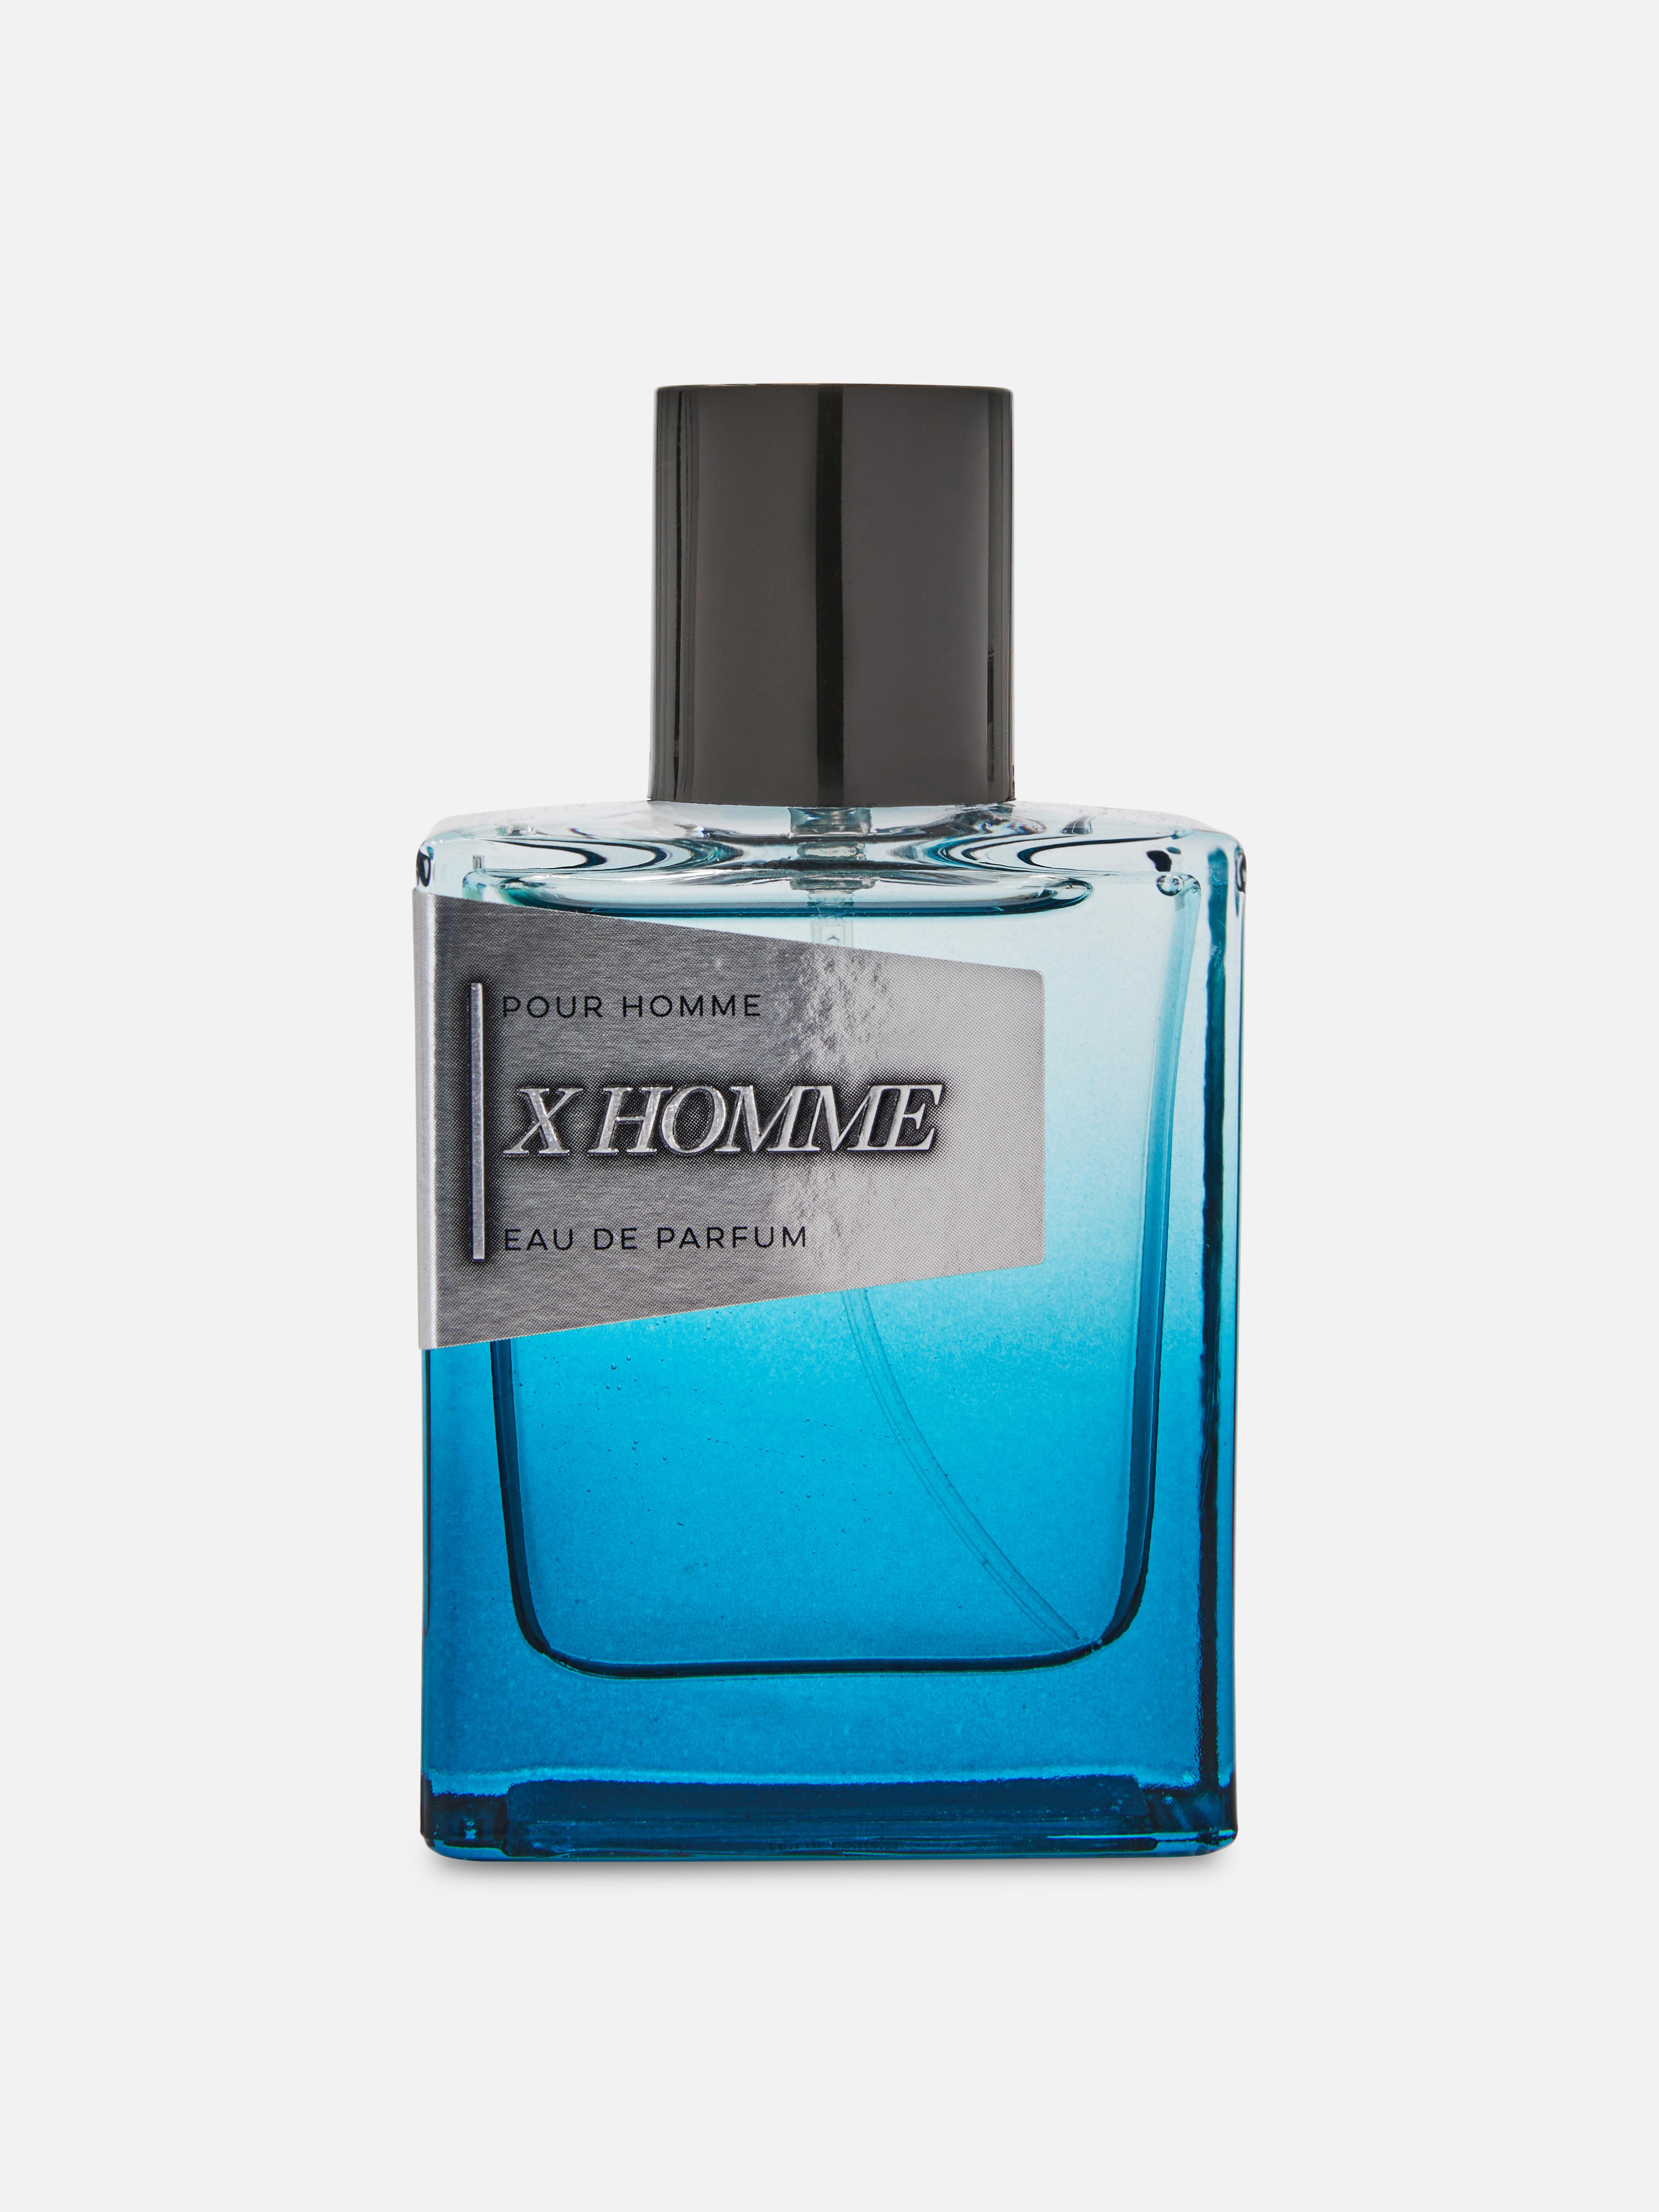 Eau de parfum X Homme